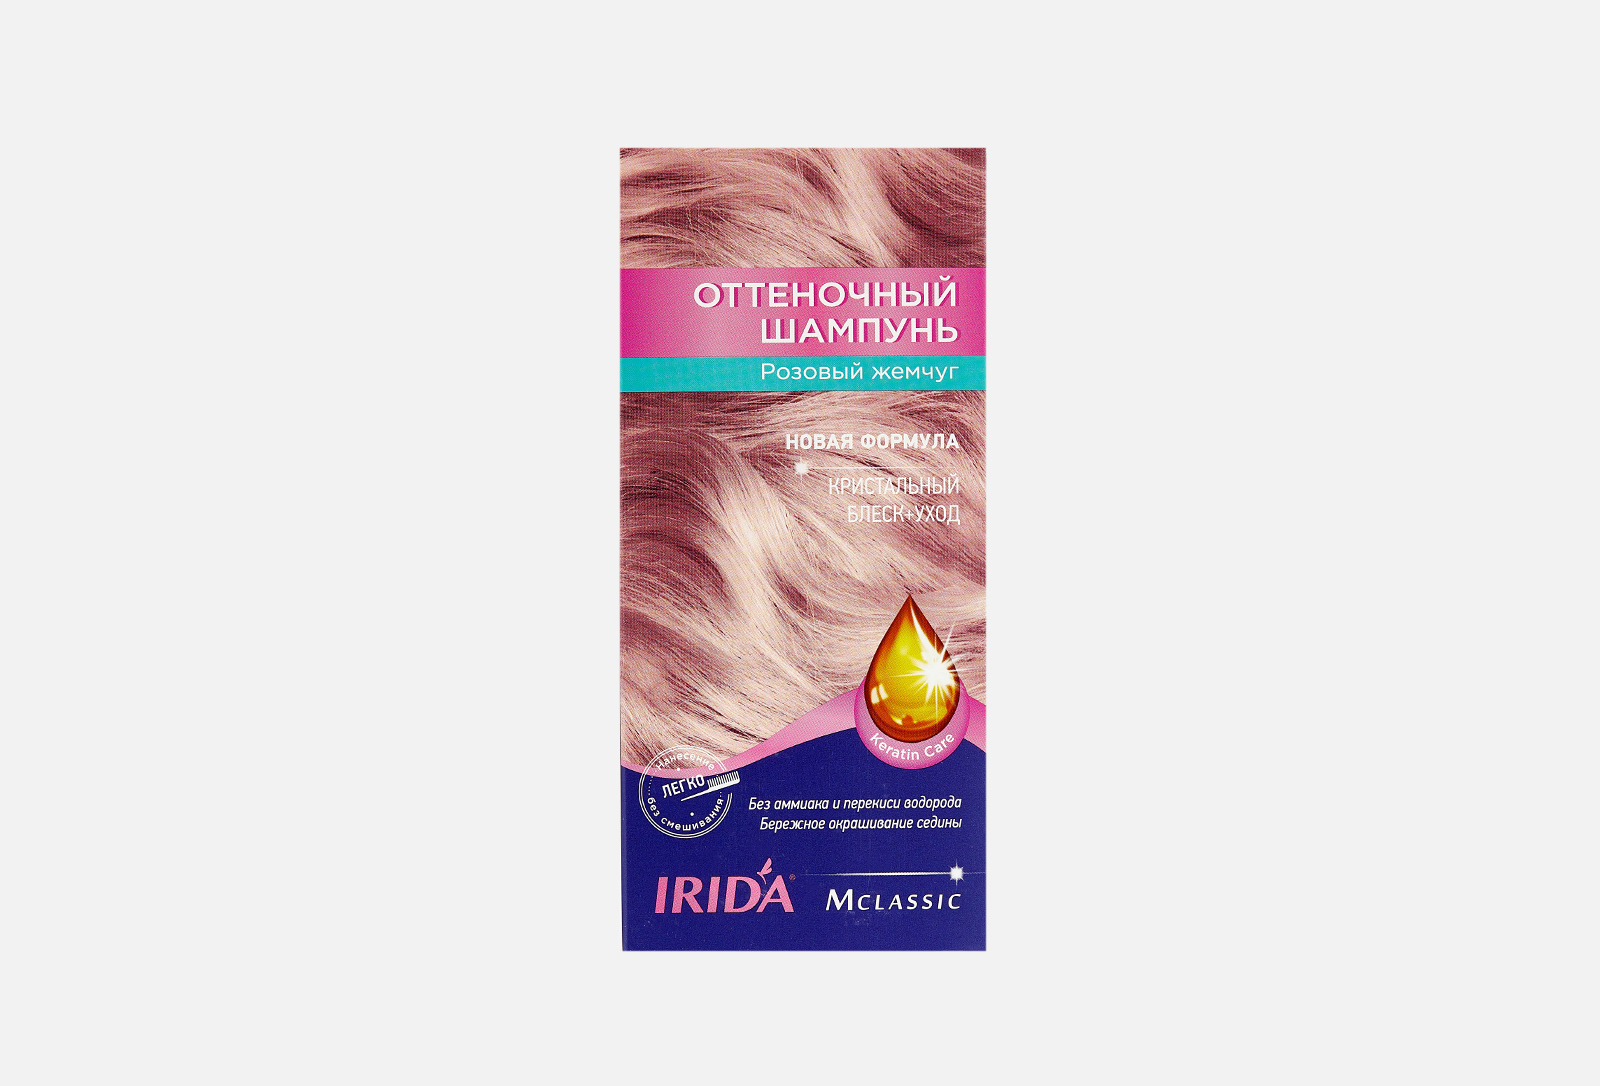 Оттеночный шампунь для волос Ирида. Ирида оттеночный шампунь розовый жемчуг. Irida оттеночный шампунь розовый жемчуг. Ирида оттеночный шампунь розовый. Оттеночный ирида отзывы